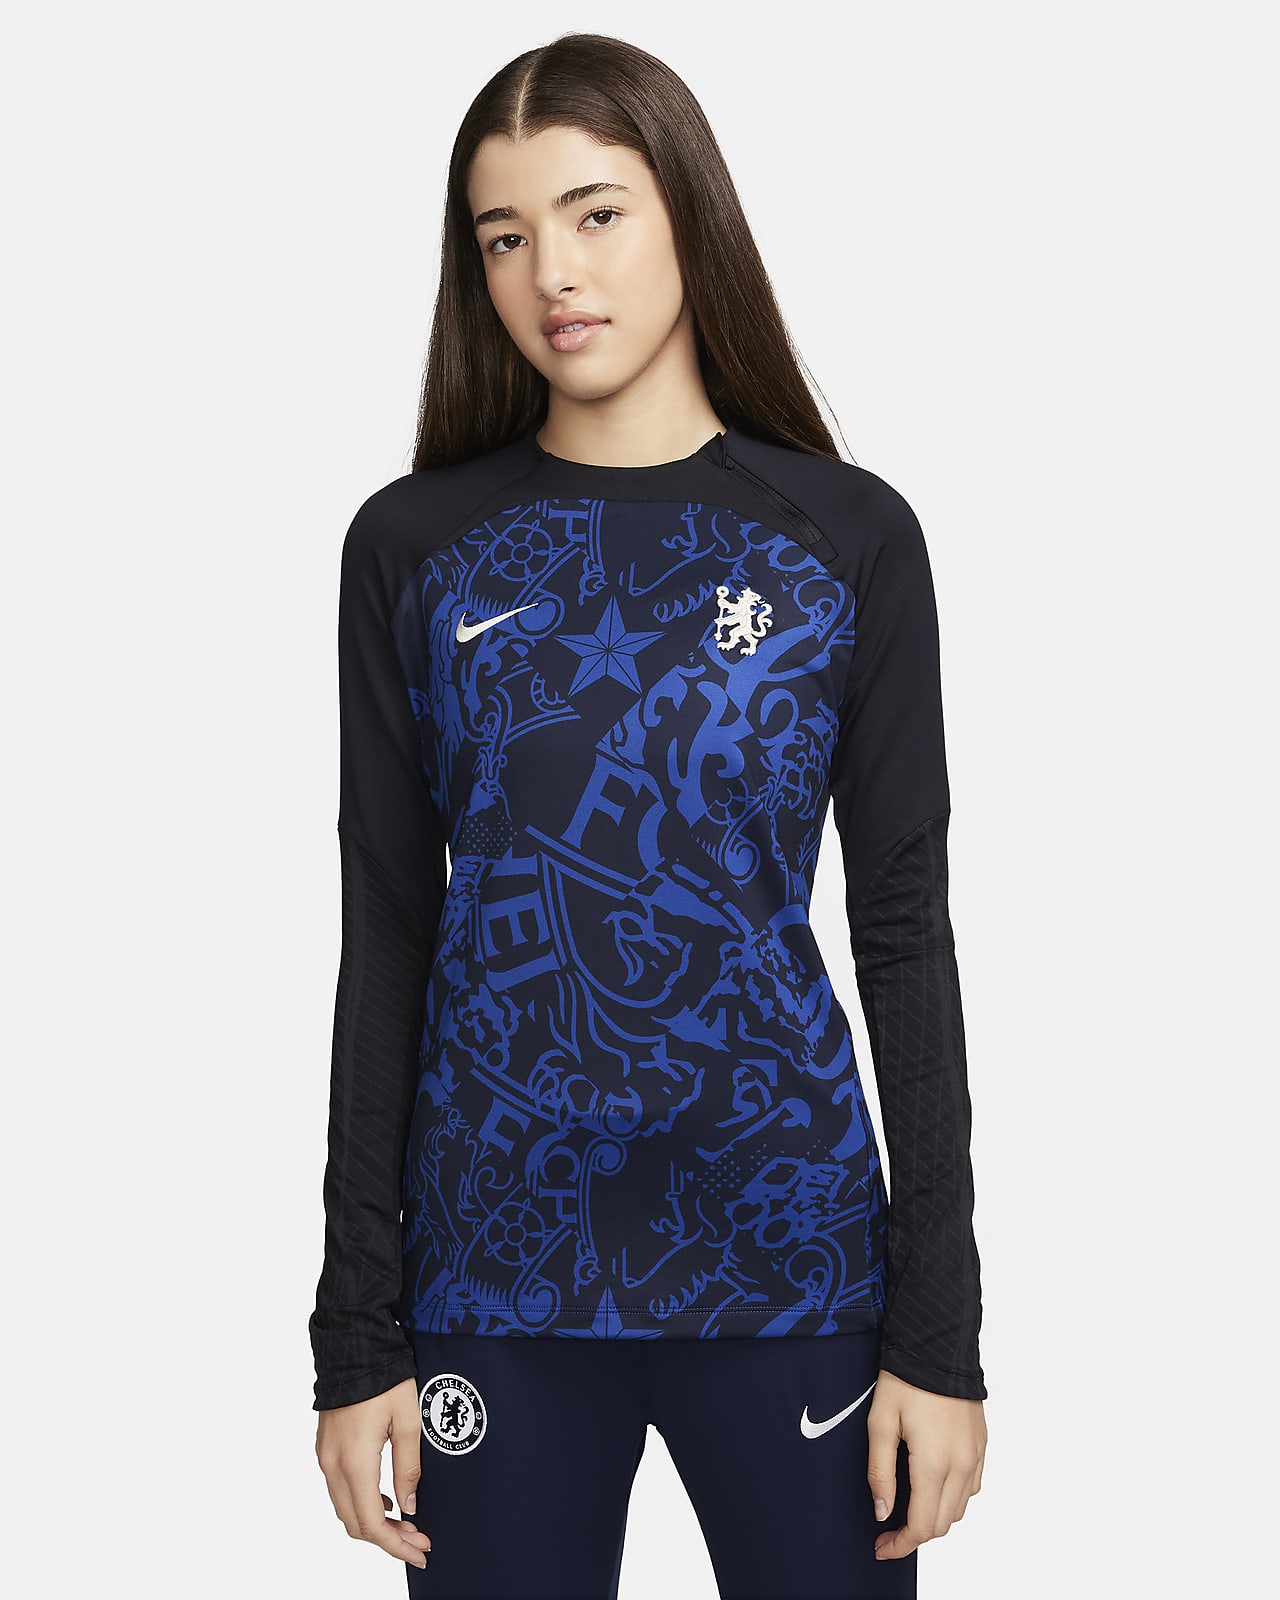 Γυναικεία ποδοσφαιρική μπλούζα προπόνησης με crew λαιμόκοψη Nike Dri-FIT Τσέλσι Strike